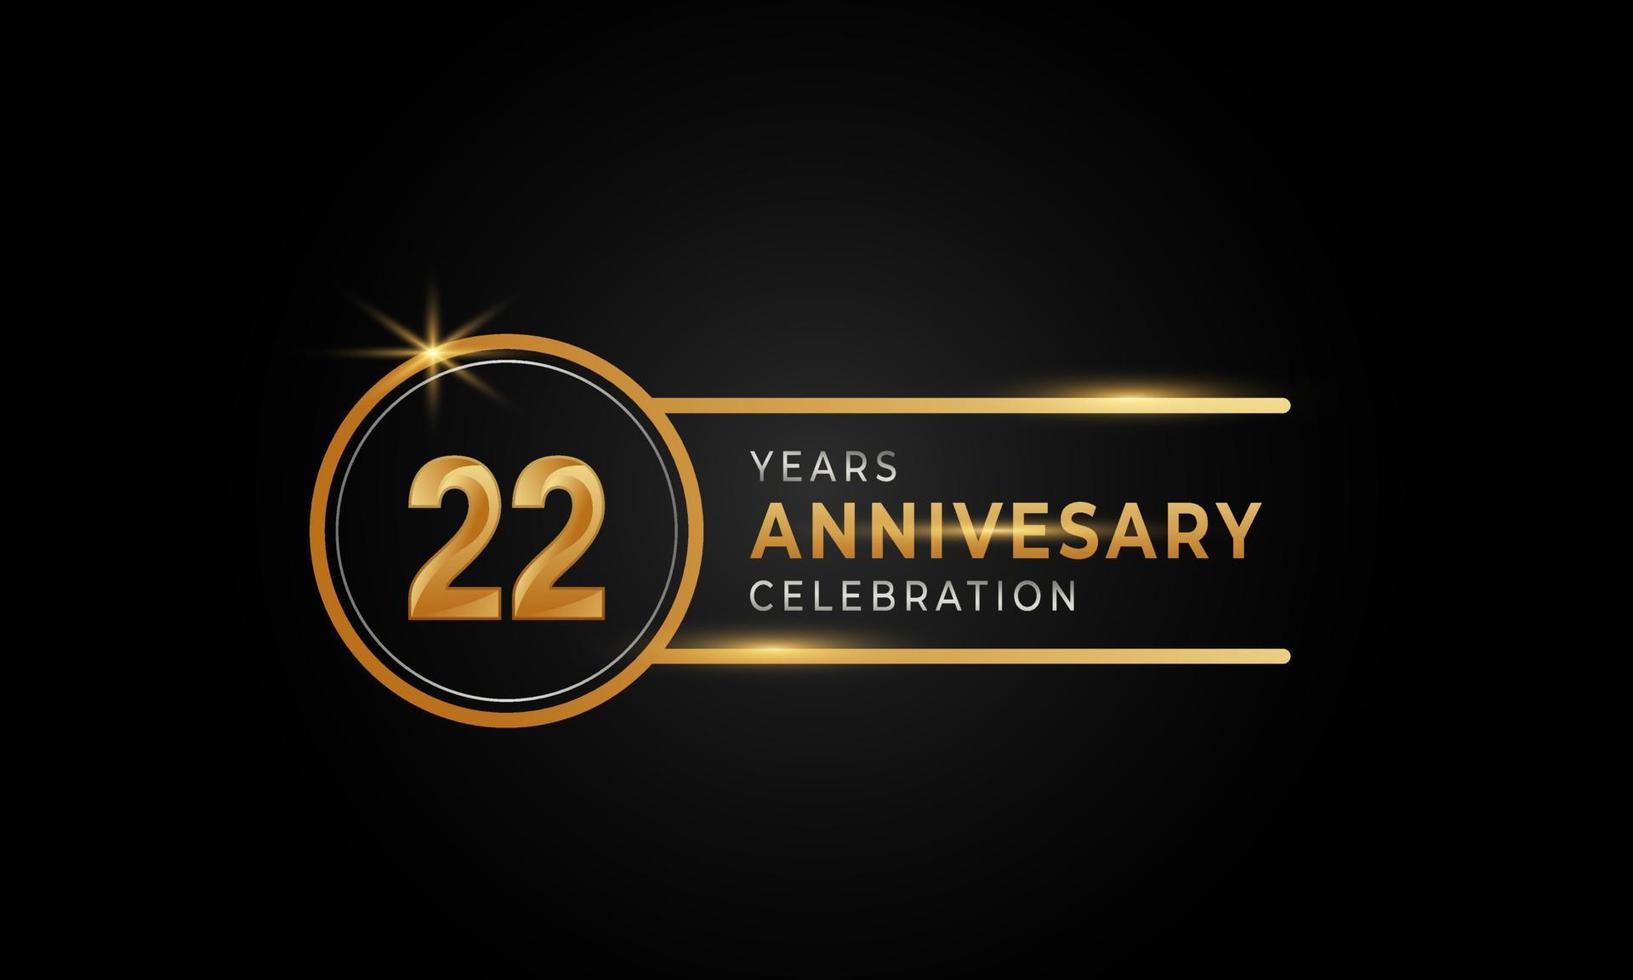 Celebrazione dell'anniversario di 22 anni colore dorato e argento con anello circolare per eventi celebrativi, matrimoni, biglietti di auguri e inviti isolati su sfondo nero vettore